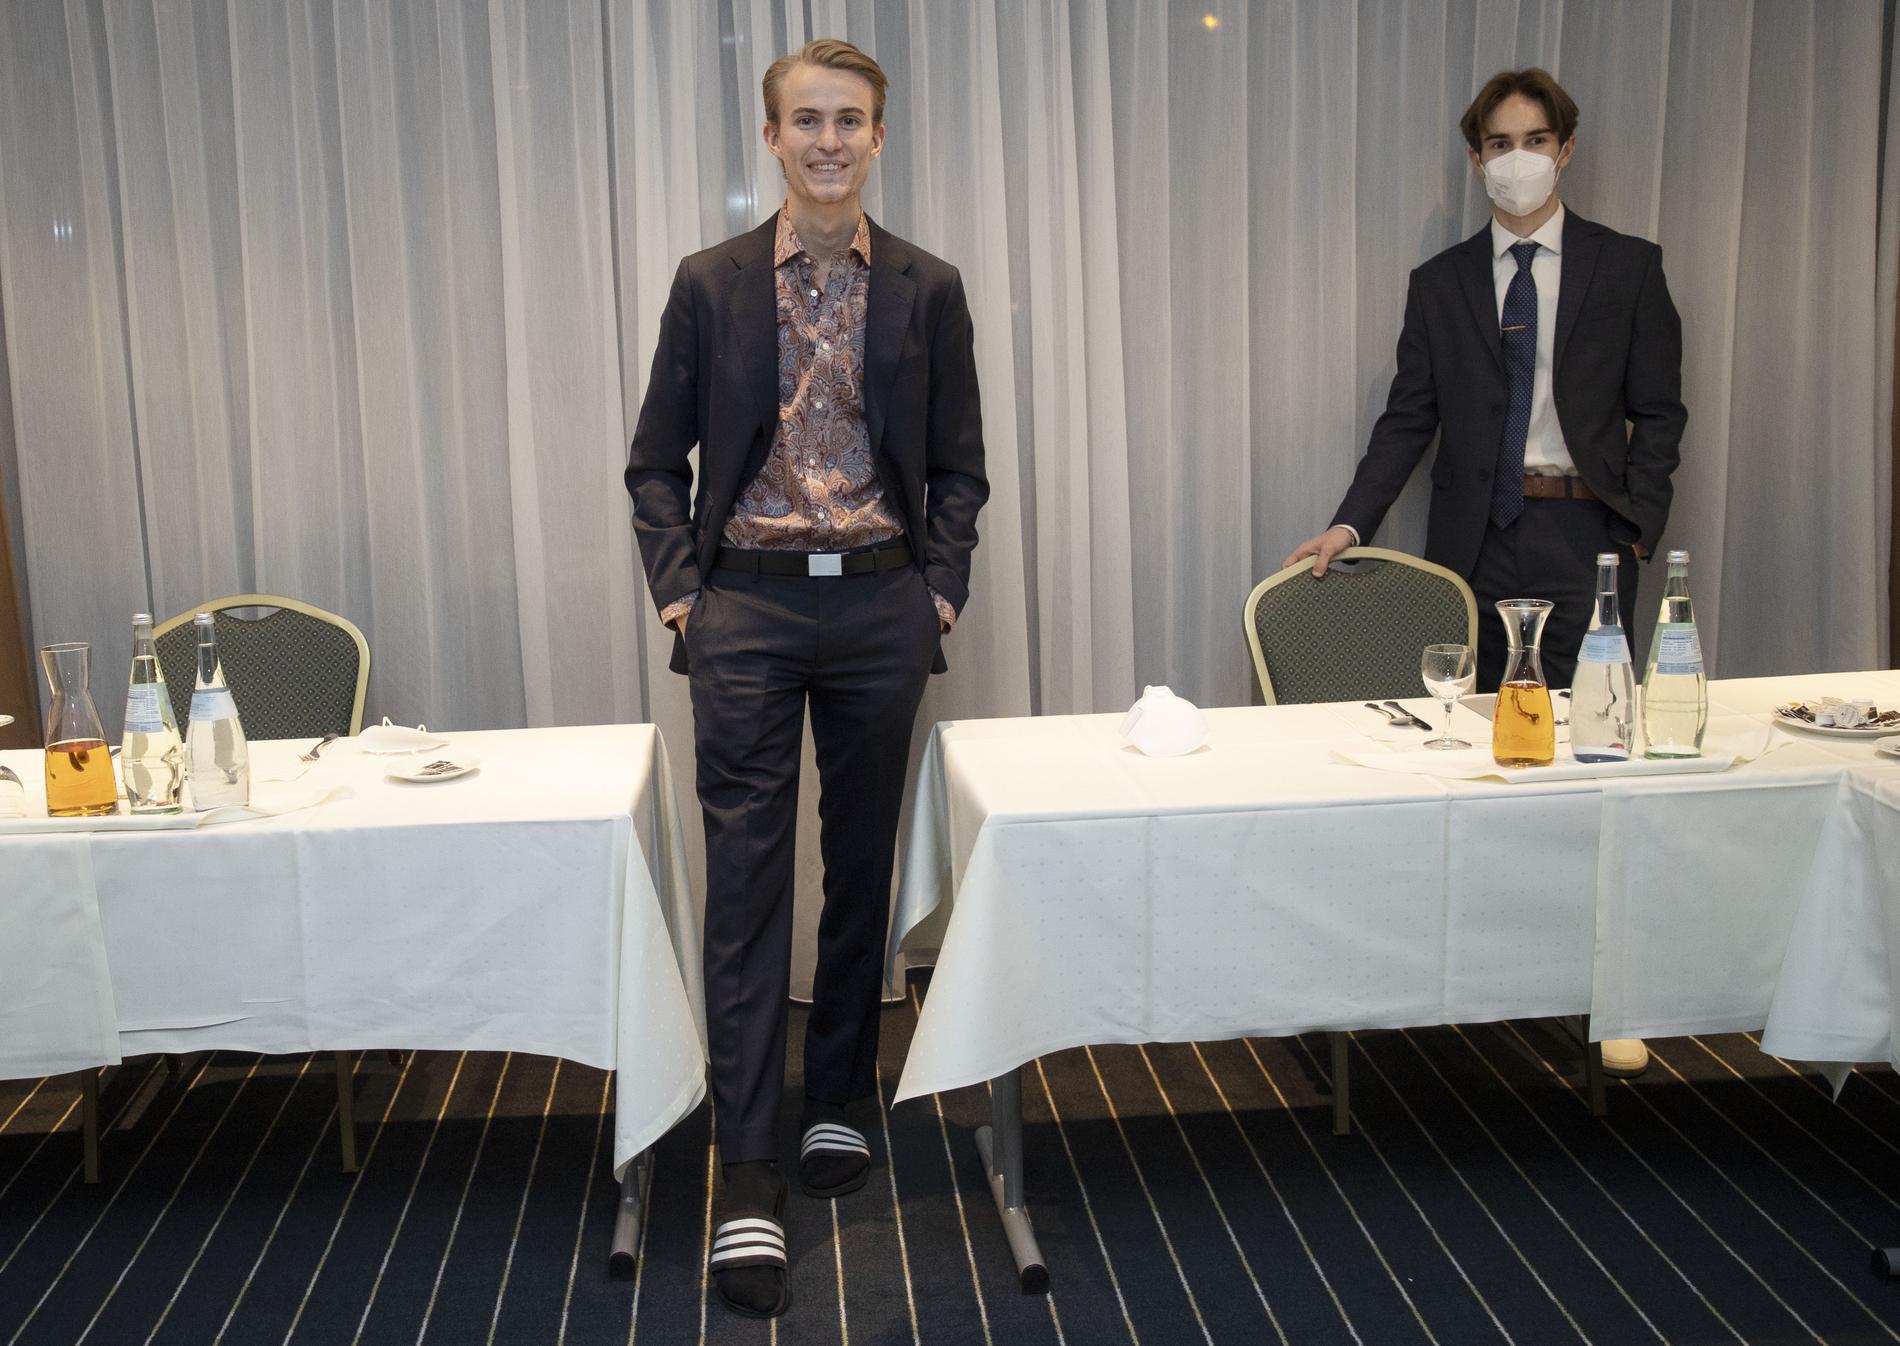 SANDALER: Tande sparte penskoene på middagen. Her viser han sportssandalene. Vossan Eriksen – som var kveldens debuttaler – står bak.